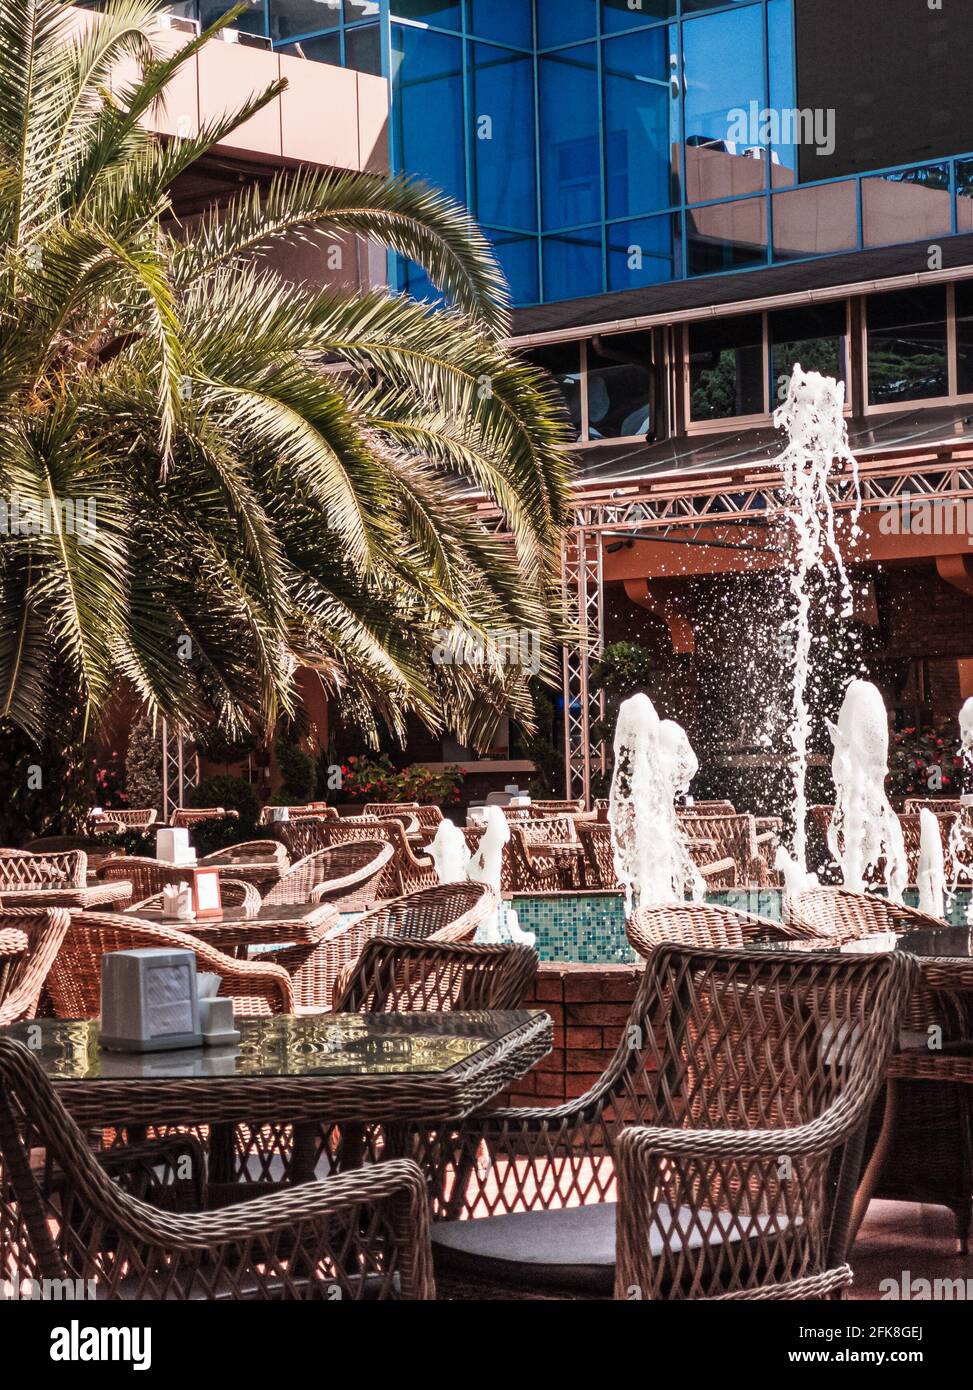 Leere Tische im Café oder Restaurant unter freiem Himmel mit Palmen und Springbrunnen. Straßencafé innen. Urlaubs- und Resort-Konzept. Vertikal. Stockfoto